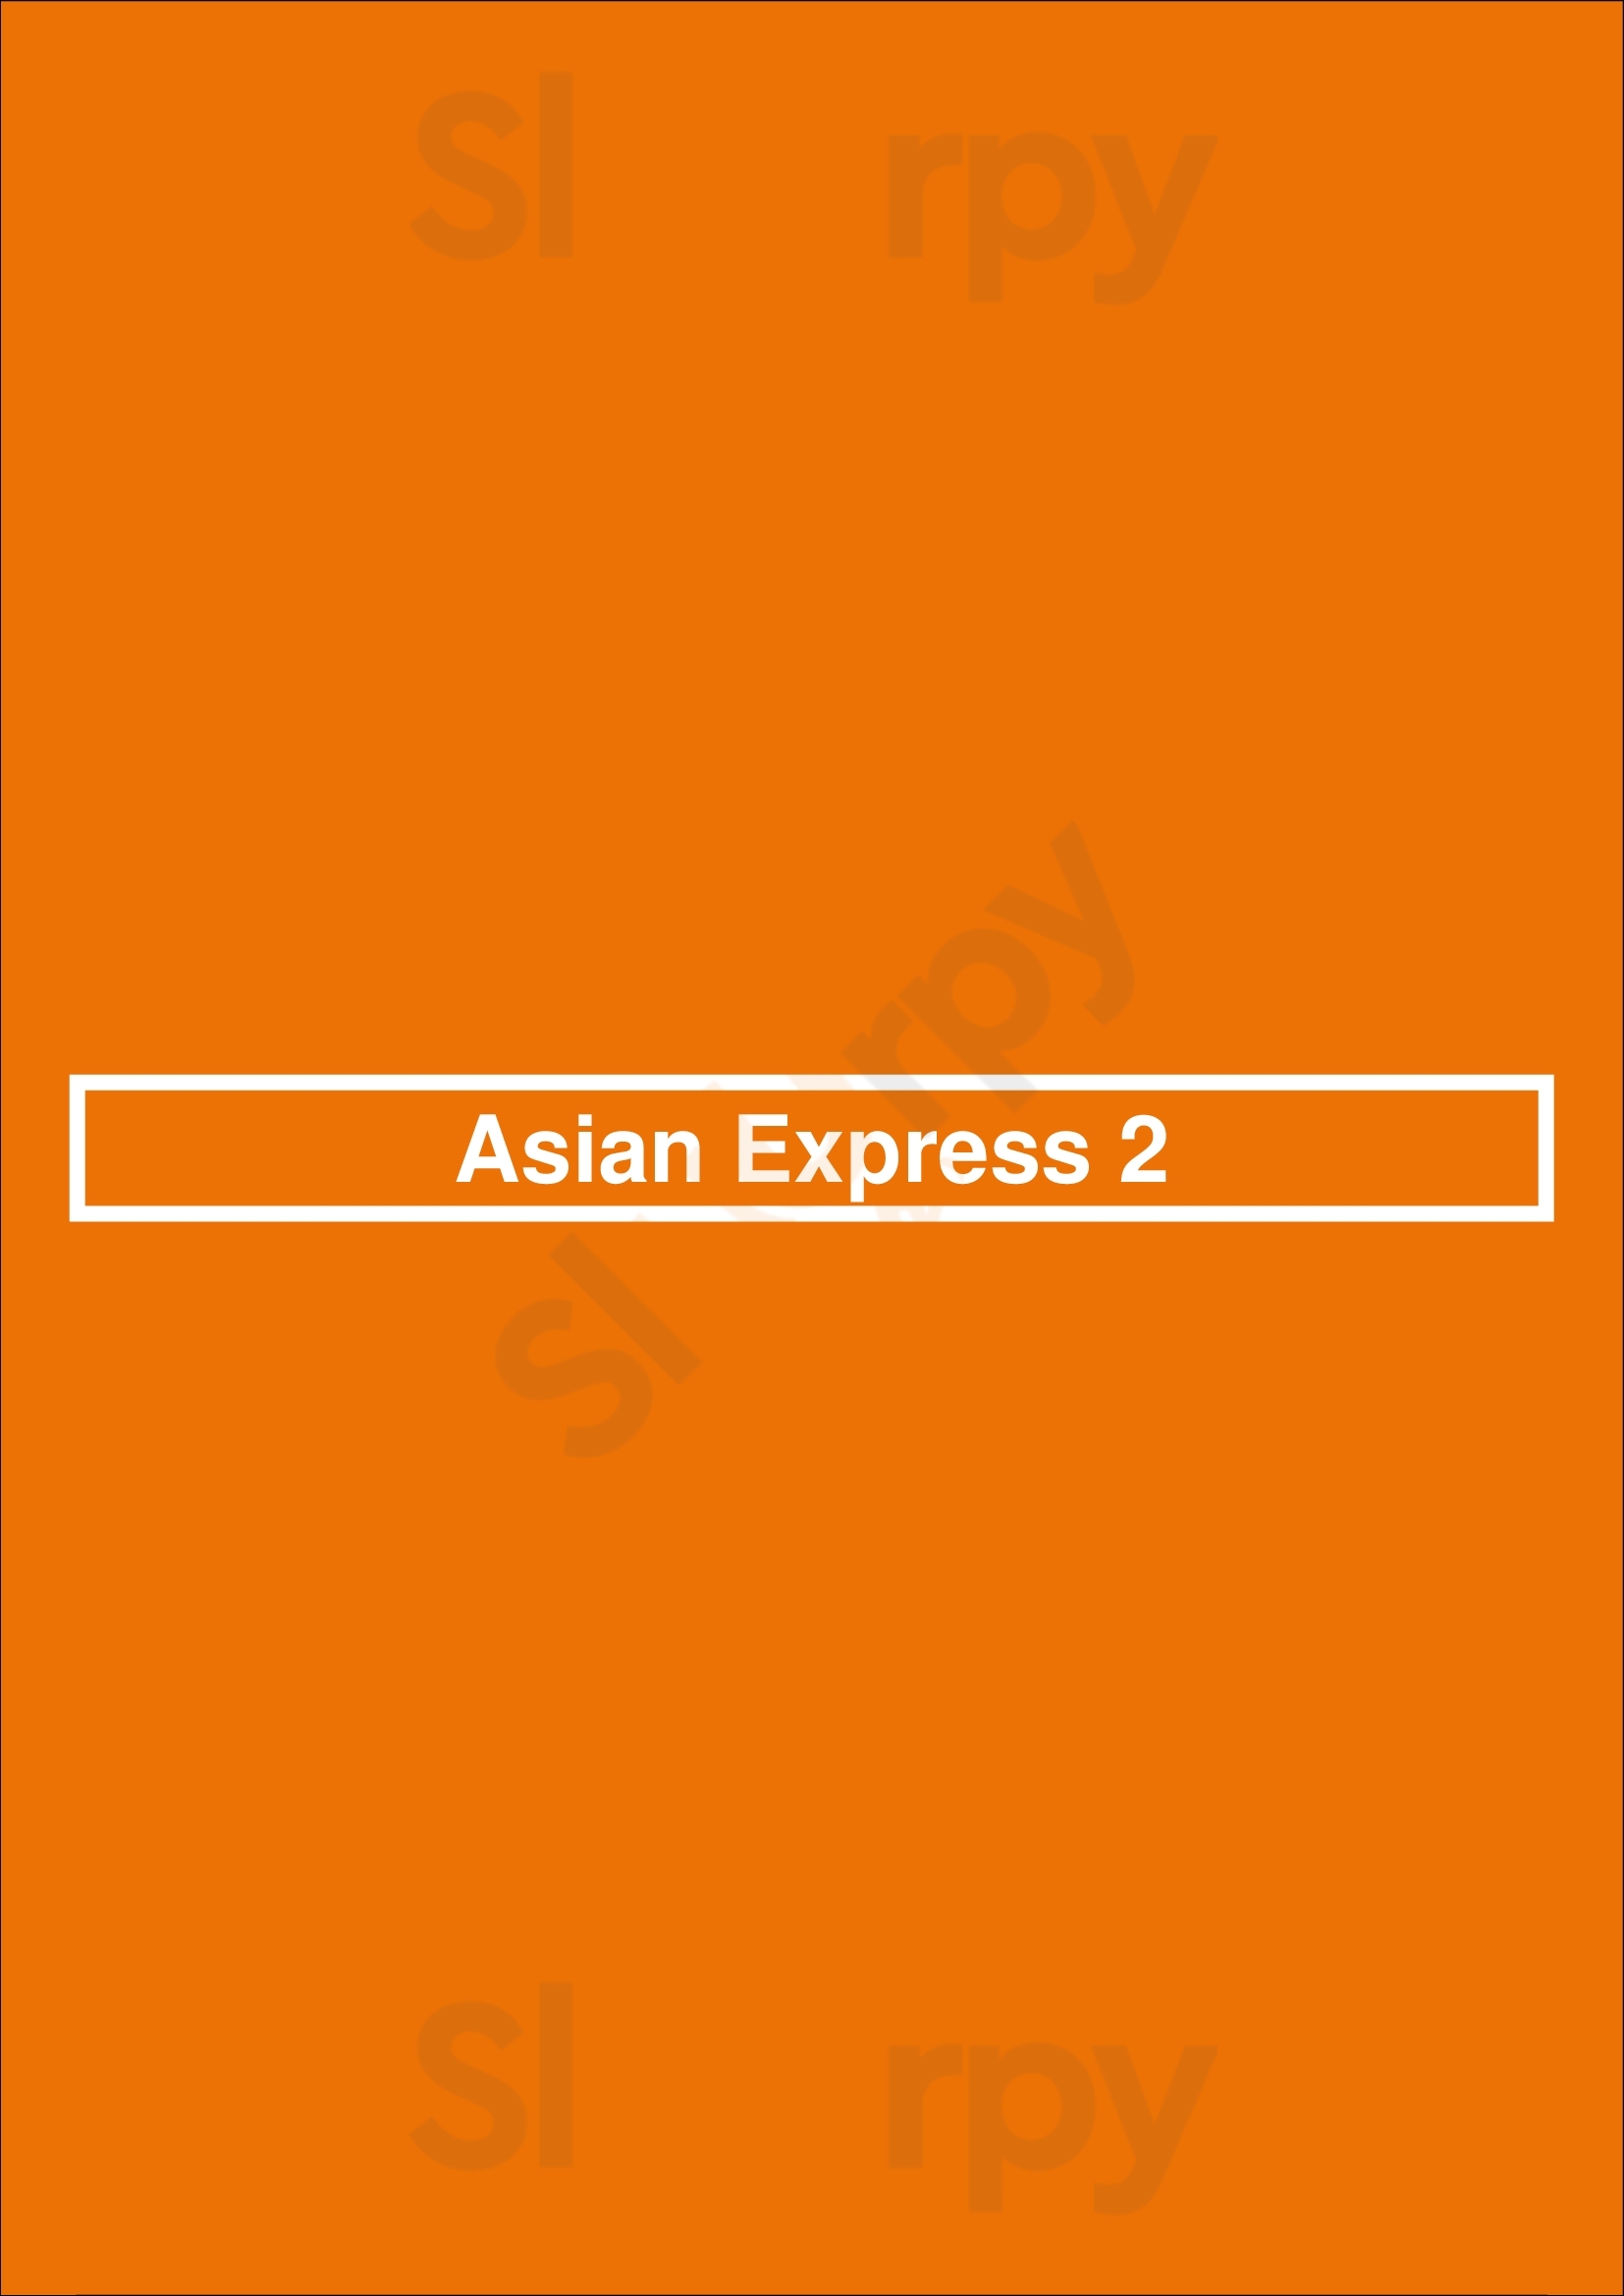 Asian Express 2 Saint Paul Menu - 1